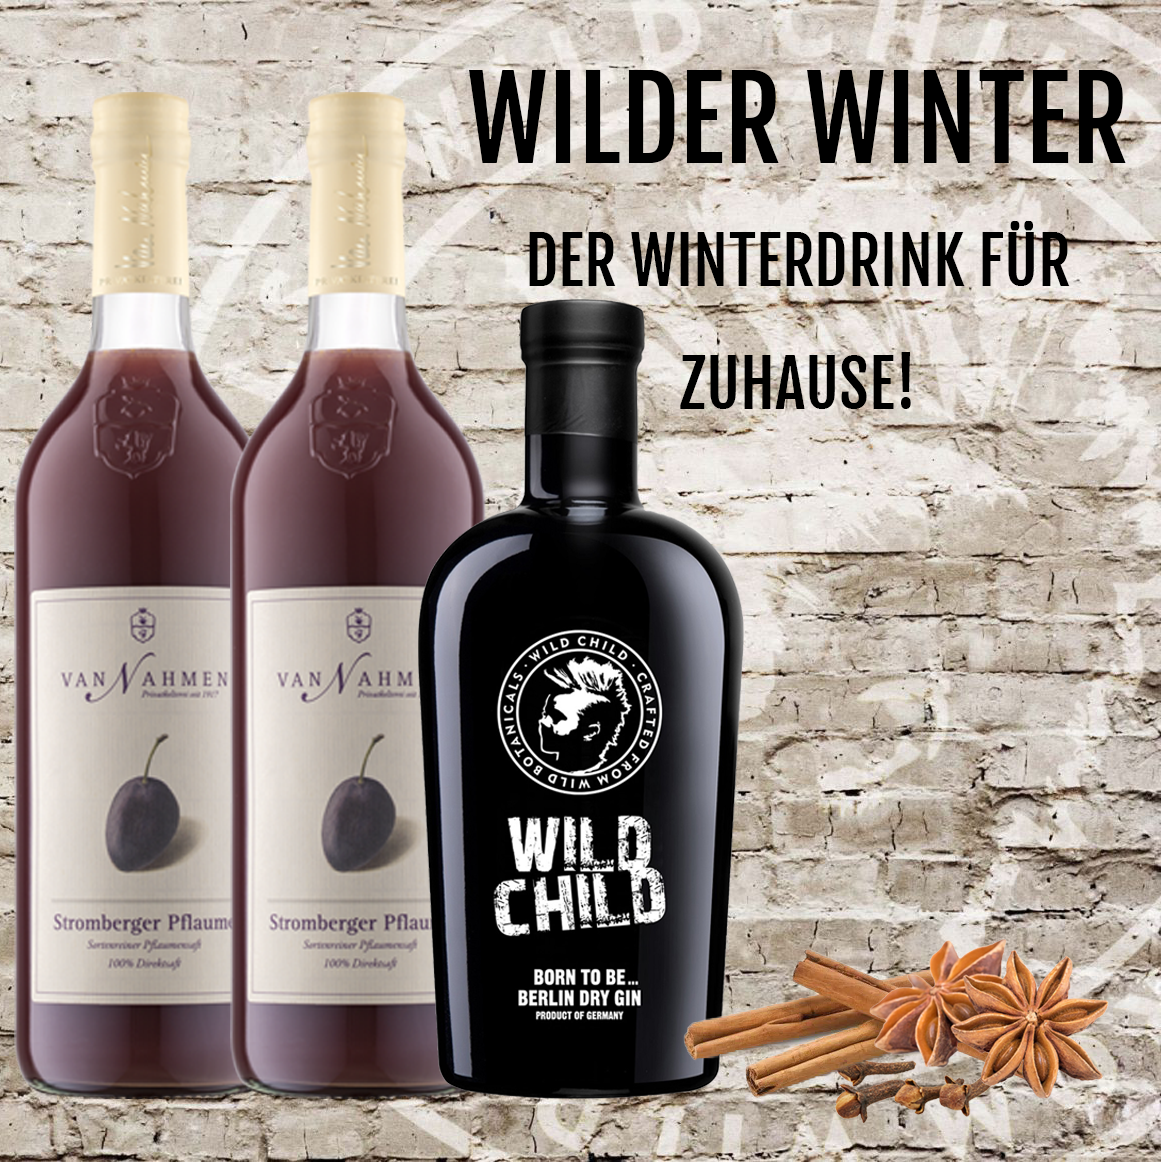 Wild - zuhause für Child Winter, Shop Berlin Winterdrink der Online Wilder - Gin